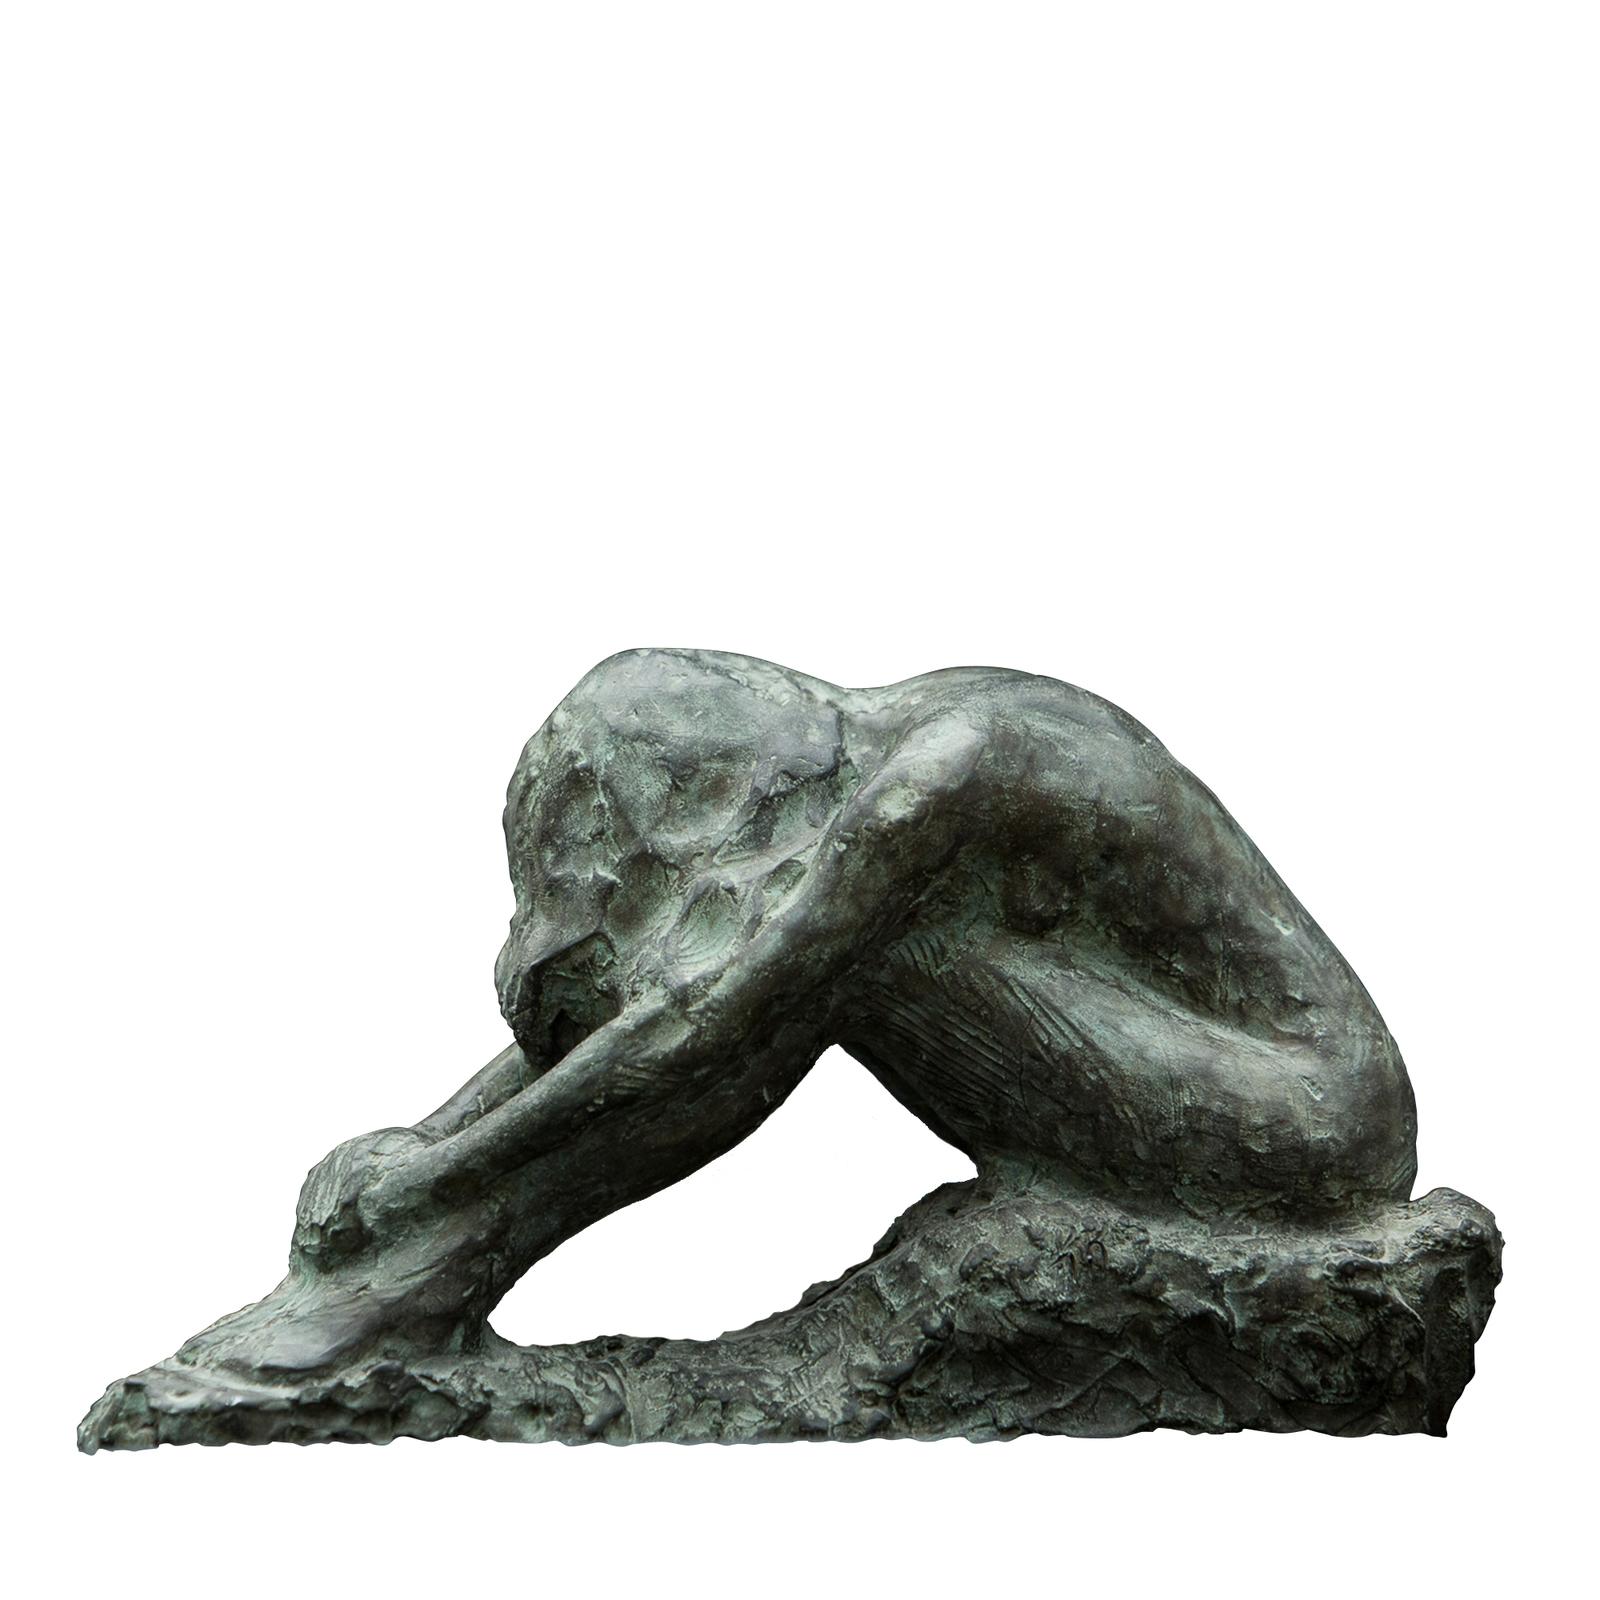 Bei dieser Bronzeskulptur handelt es sich um ein Original, das 2004 von Raffaello Romanelli geschaffen wurde und dessen Ziel es war, durch die Haltung des Körpers einen Moment der inneren Einkehr darzustellen. Für das Werk verwendete Raffaello